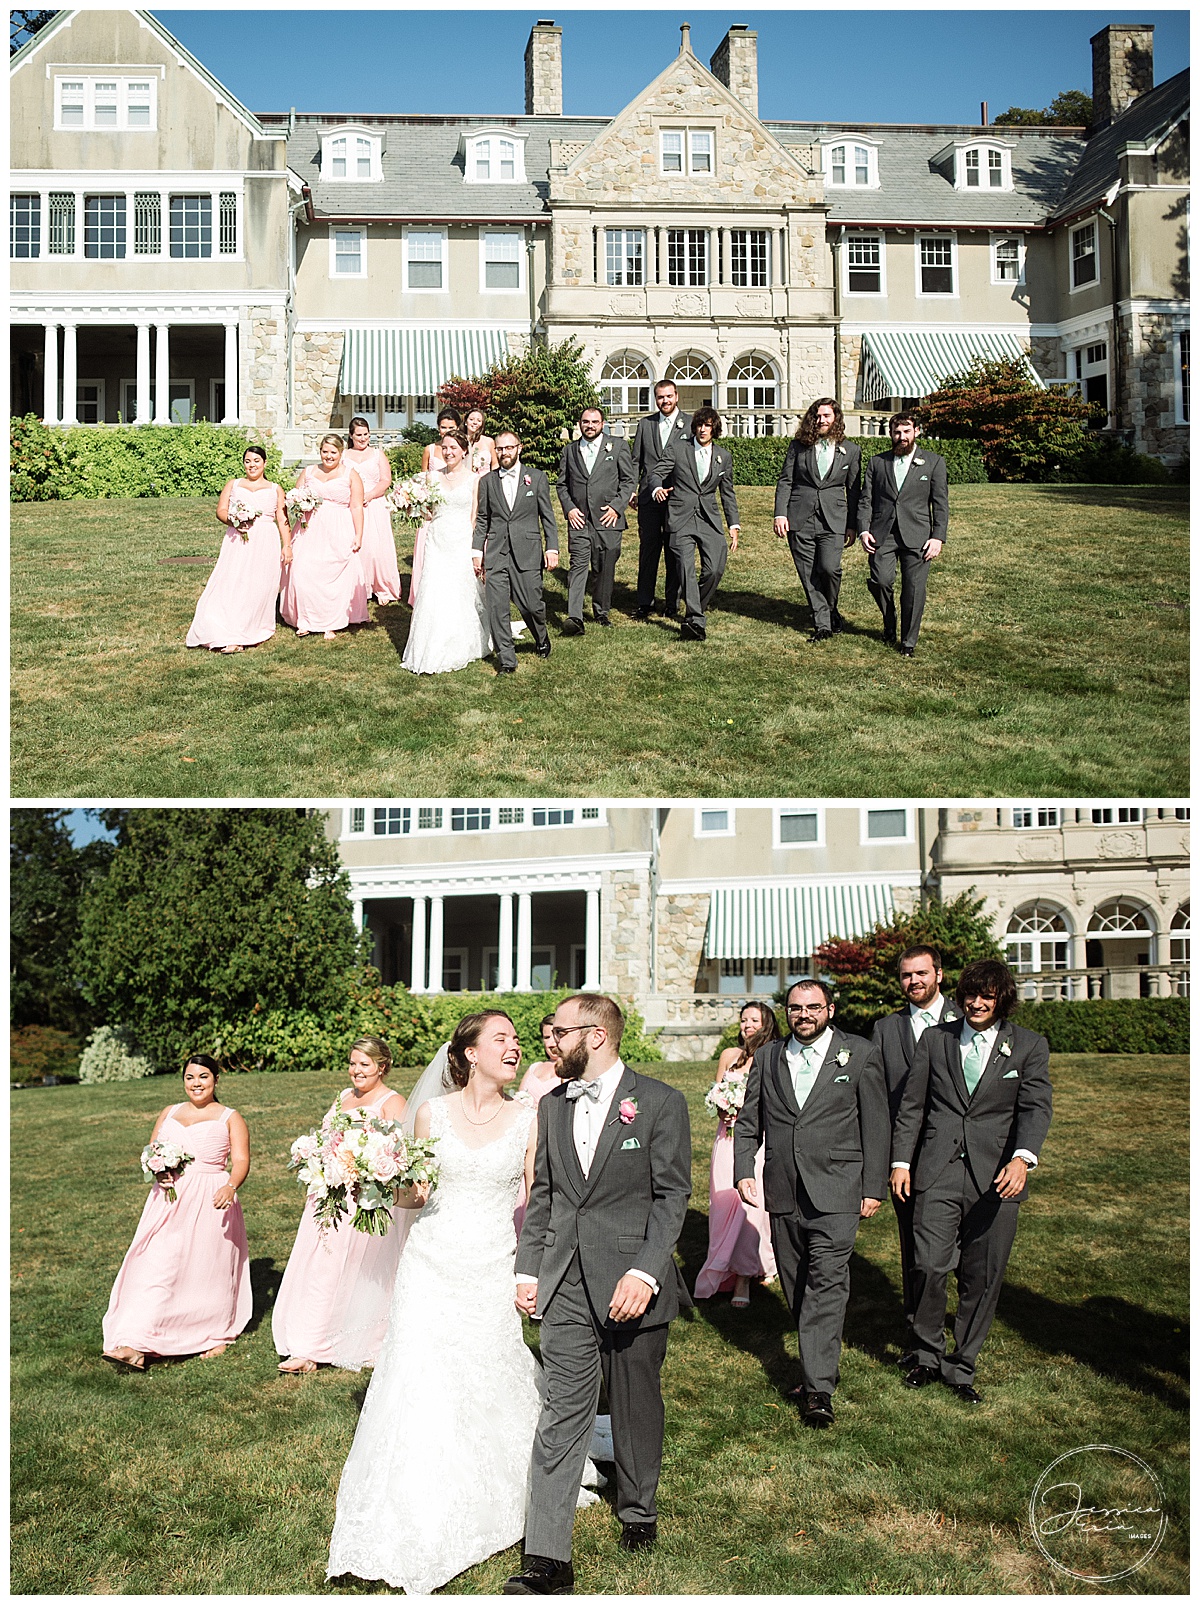 Aubrey Wedding,Blithewold Mansion,David,Kelly,Kelly and David,Rhode Island,Rhode Island Mansion,Rhode Island Wedding,Wedding,